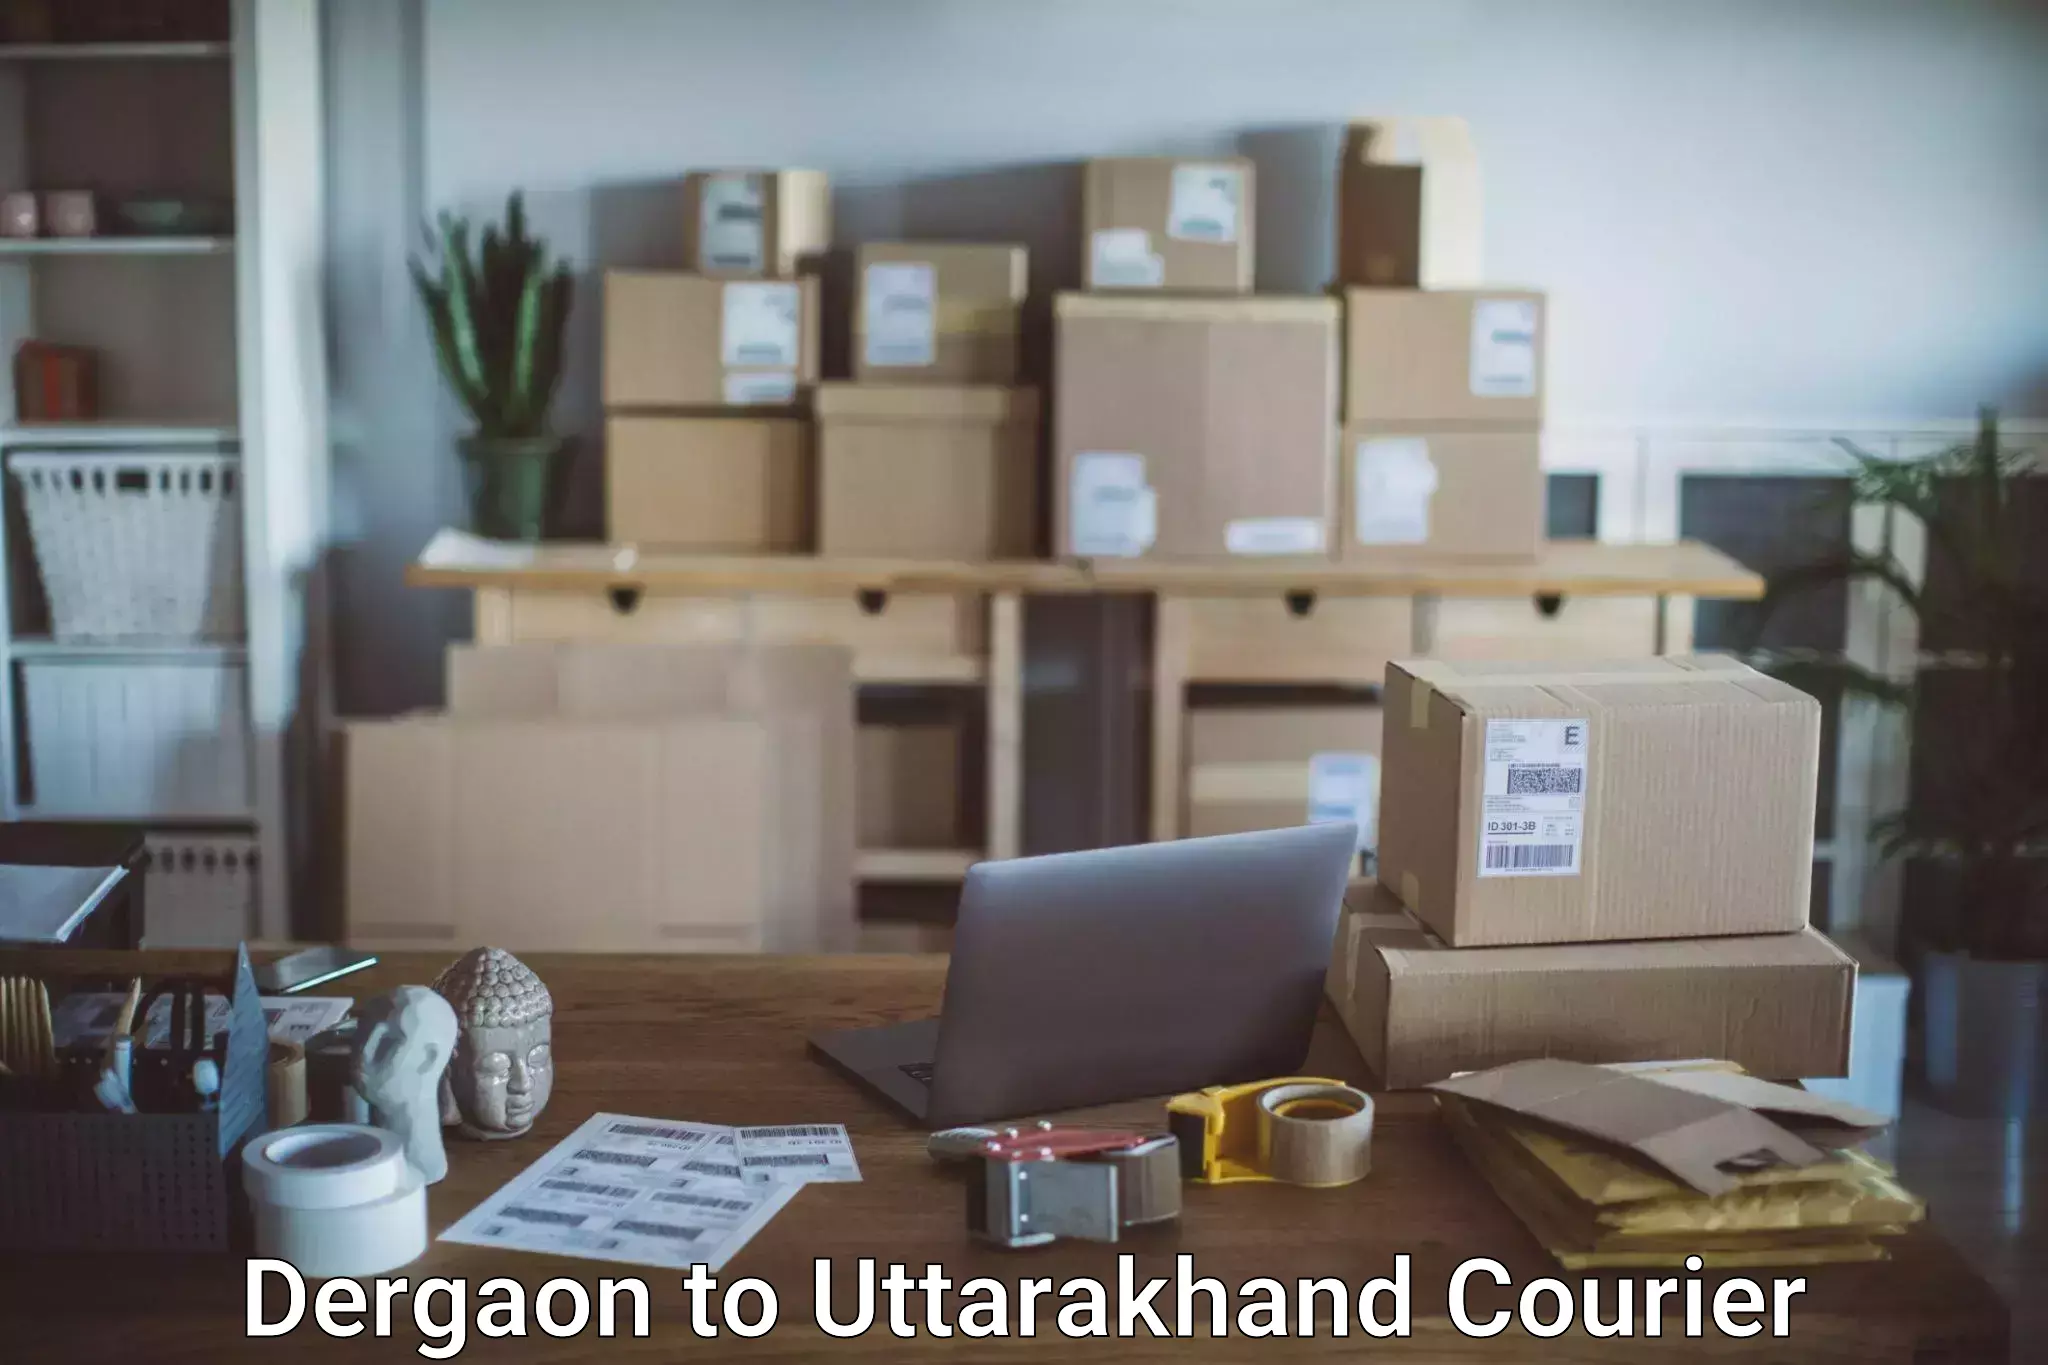 Automated luggage transport Dergaon to Uttarakhand